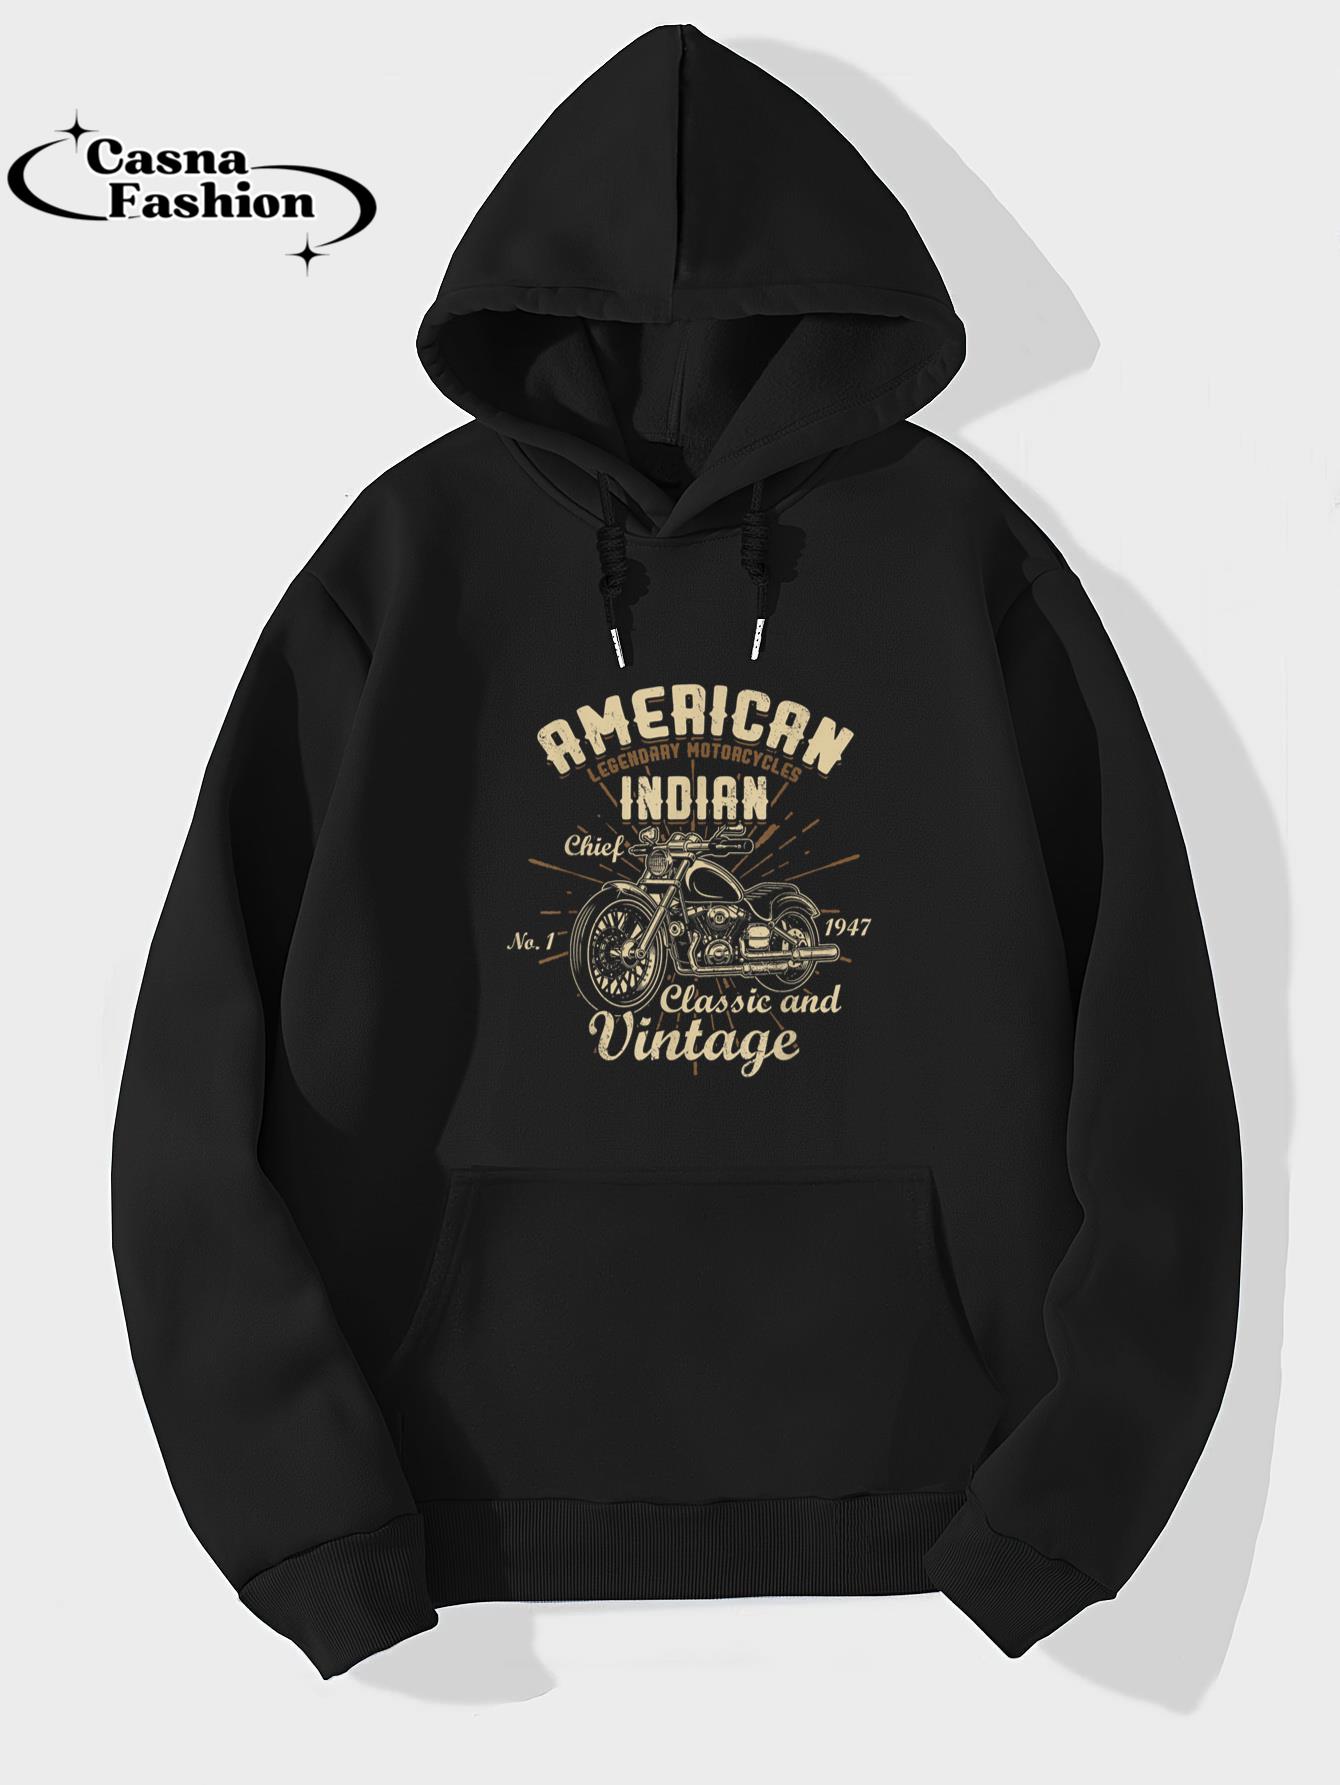 casnafashion_Hoodie_Retro Vintage American Motorcycle Funny for Old Biker T-Shirt_hoodie_black hoodie